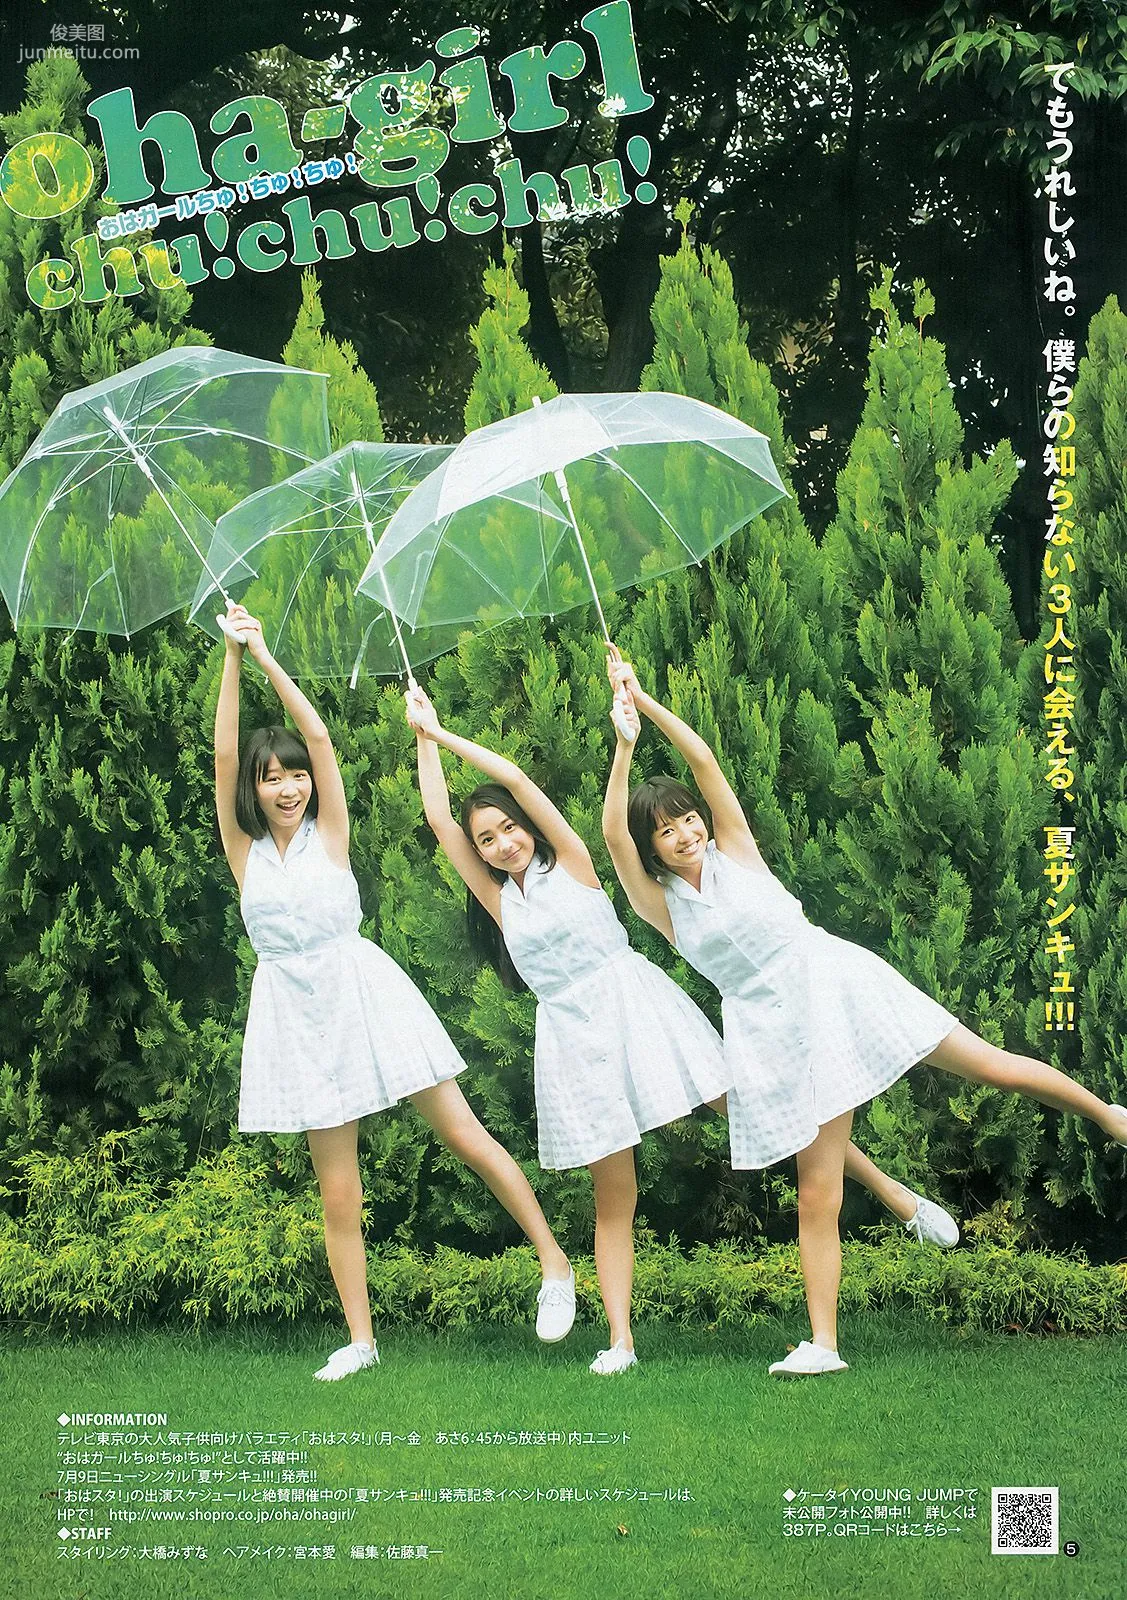 大川藍 夏菜 おはガールちゅ!ちゅ!ちゅ! [Weekly Young Jump] 2013年No.31 写真杂志17